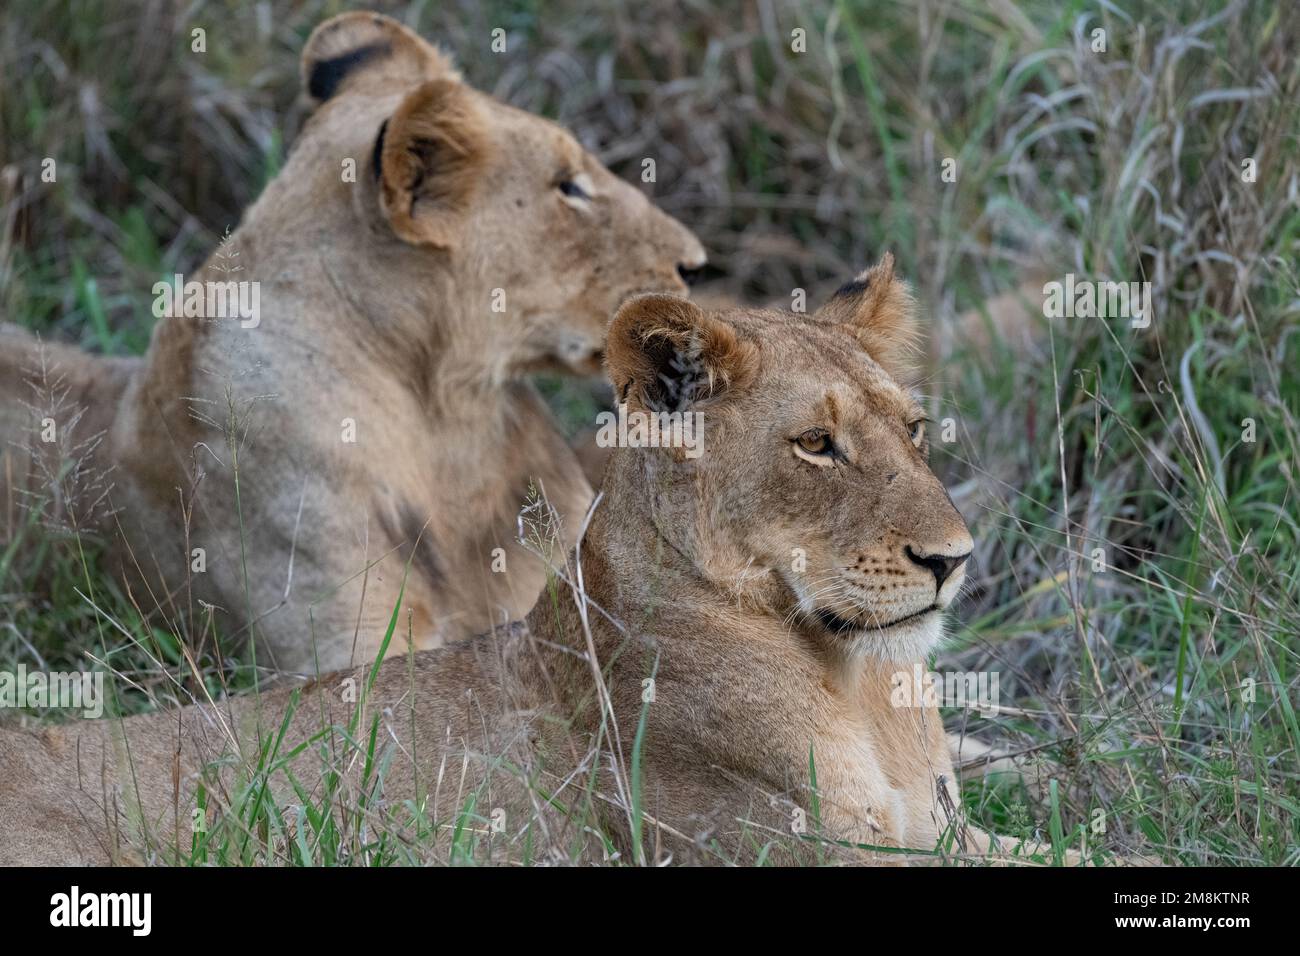 Nahaufnahme der Gesichter von zwei Löwen, die im grünen Gras des Kruger-Nationalparks, Südafrika, lagen Stockfoto